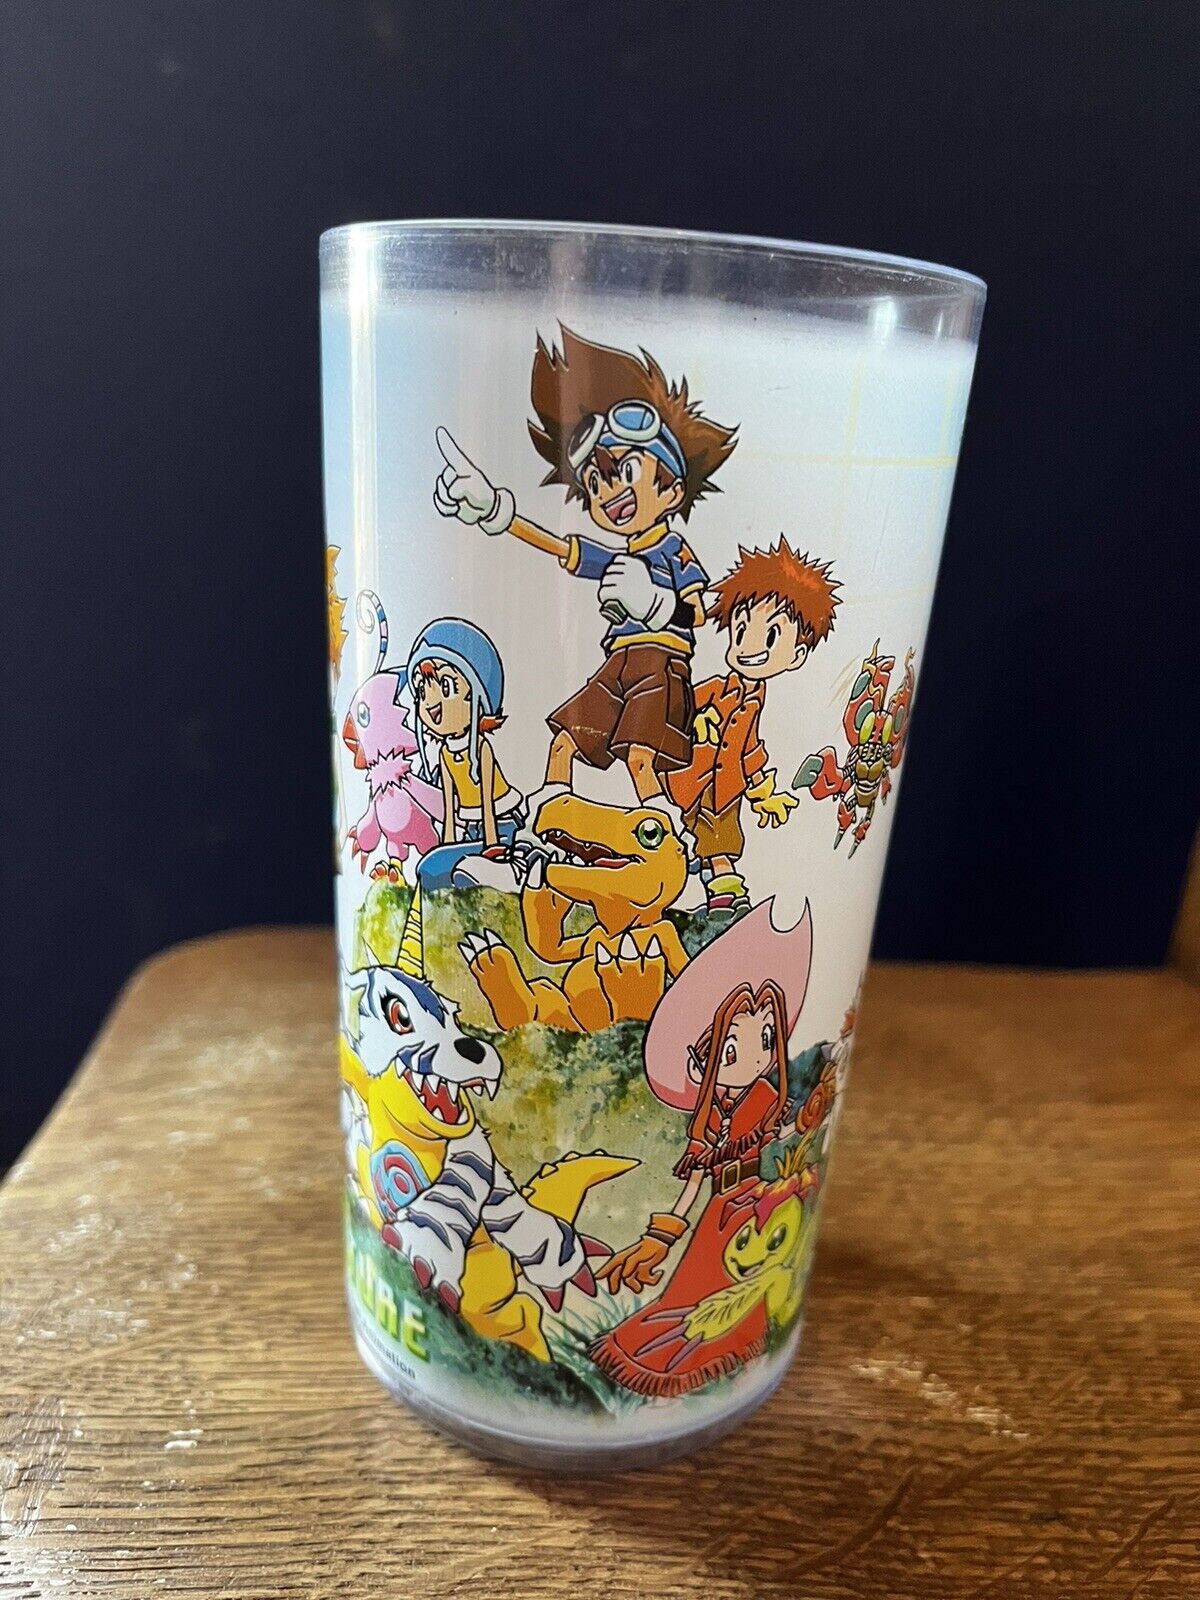  1999 Nintendo Pokemon~Digimon~Plastic Drink Glass~Akiyoshi Hongo,Toei Animation